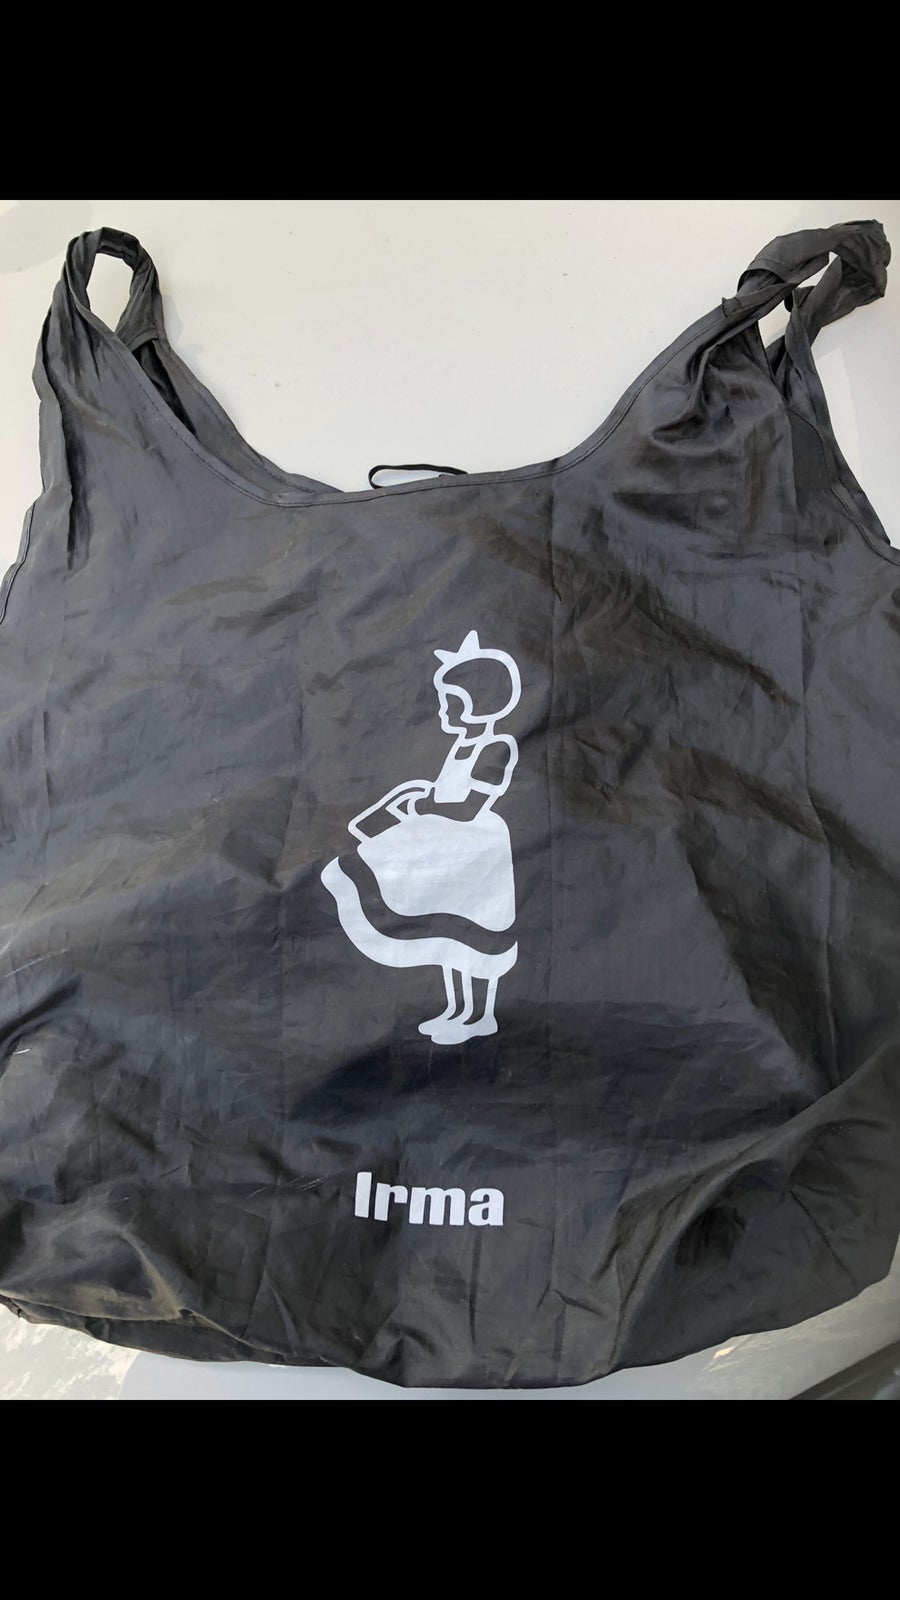 Andre samleobjekter, Irma hørpose og nylonpose